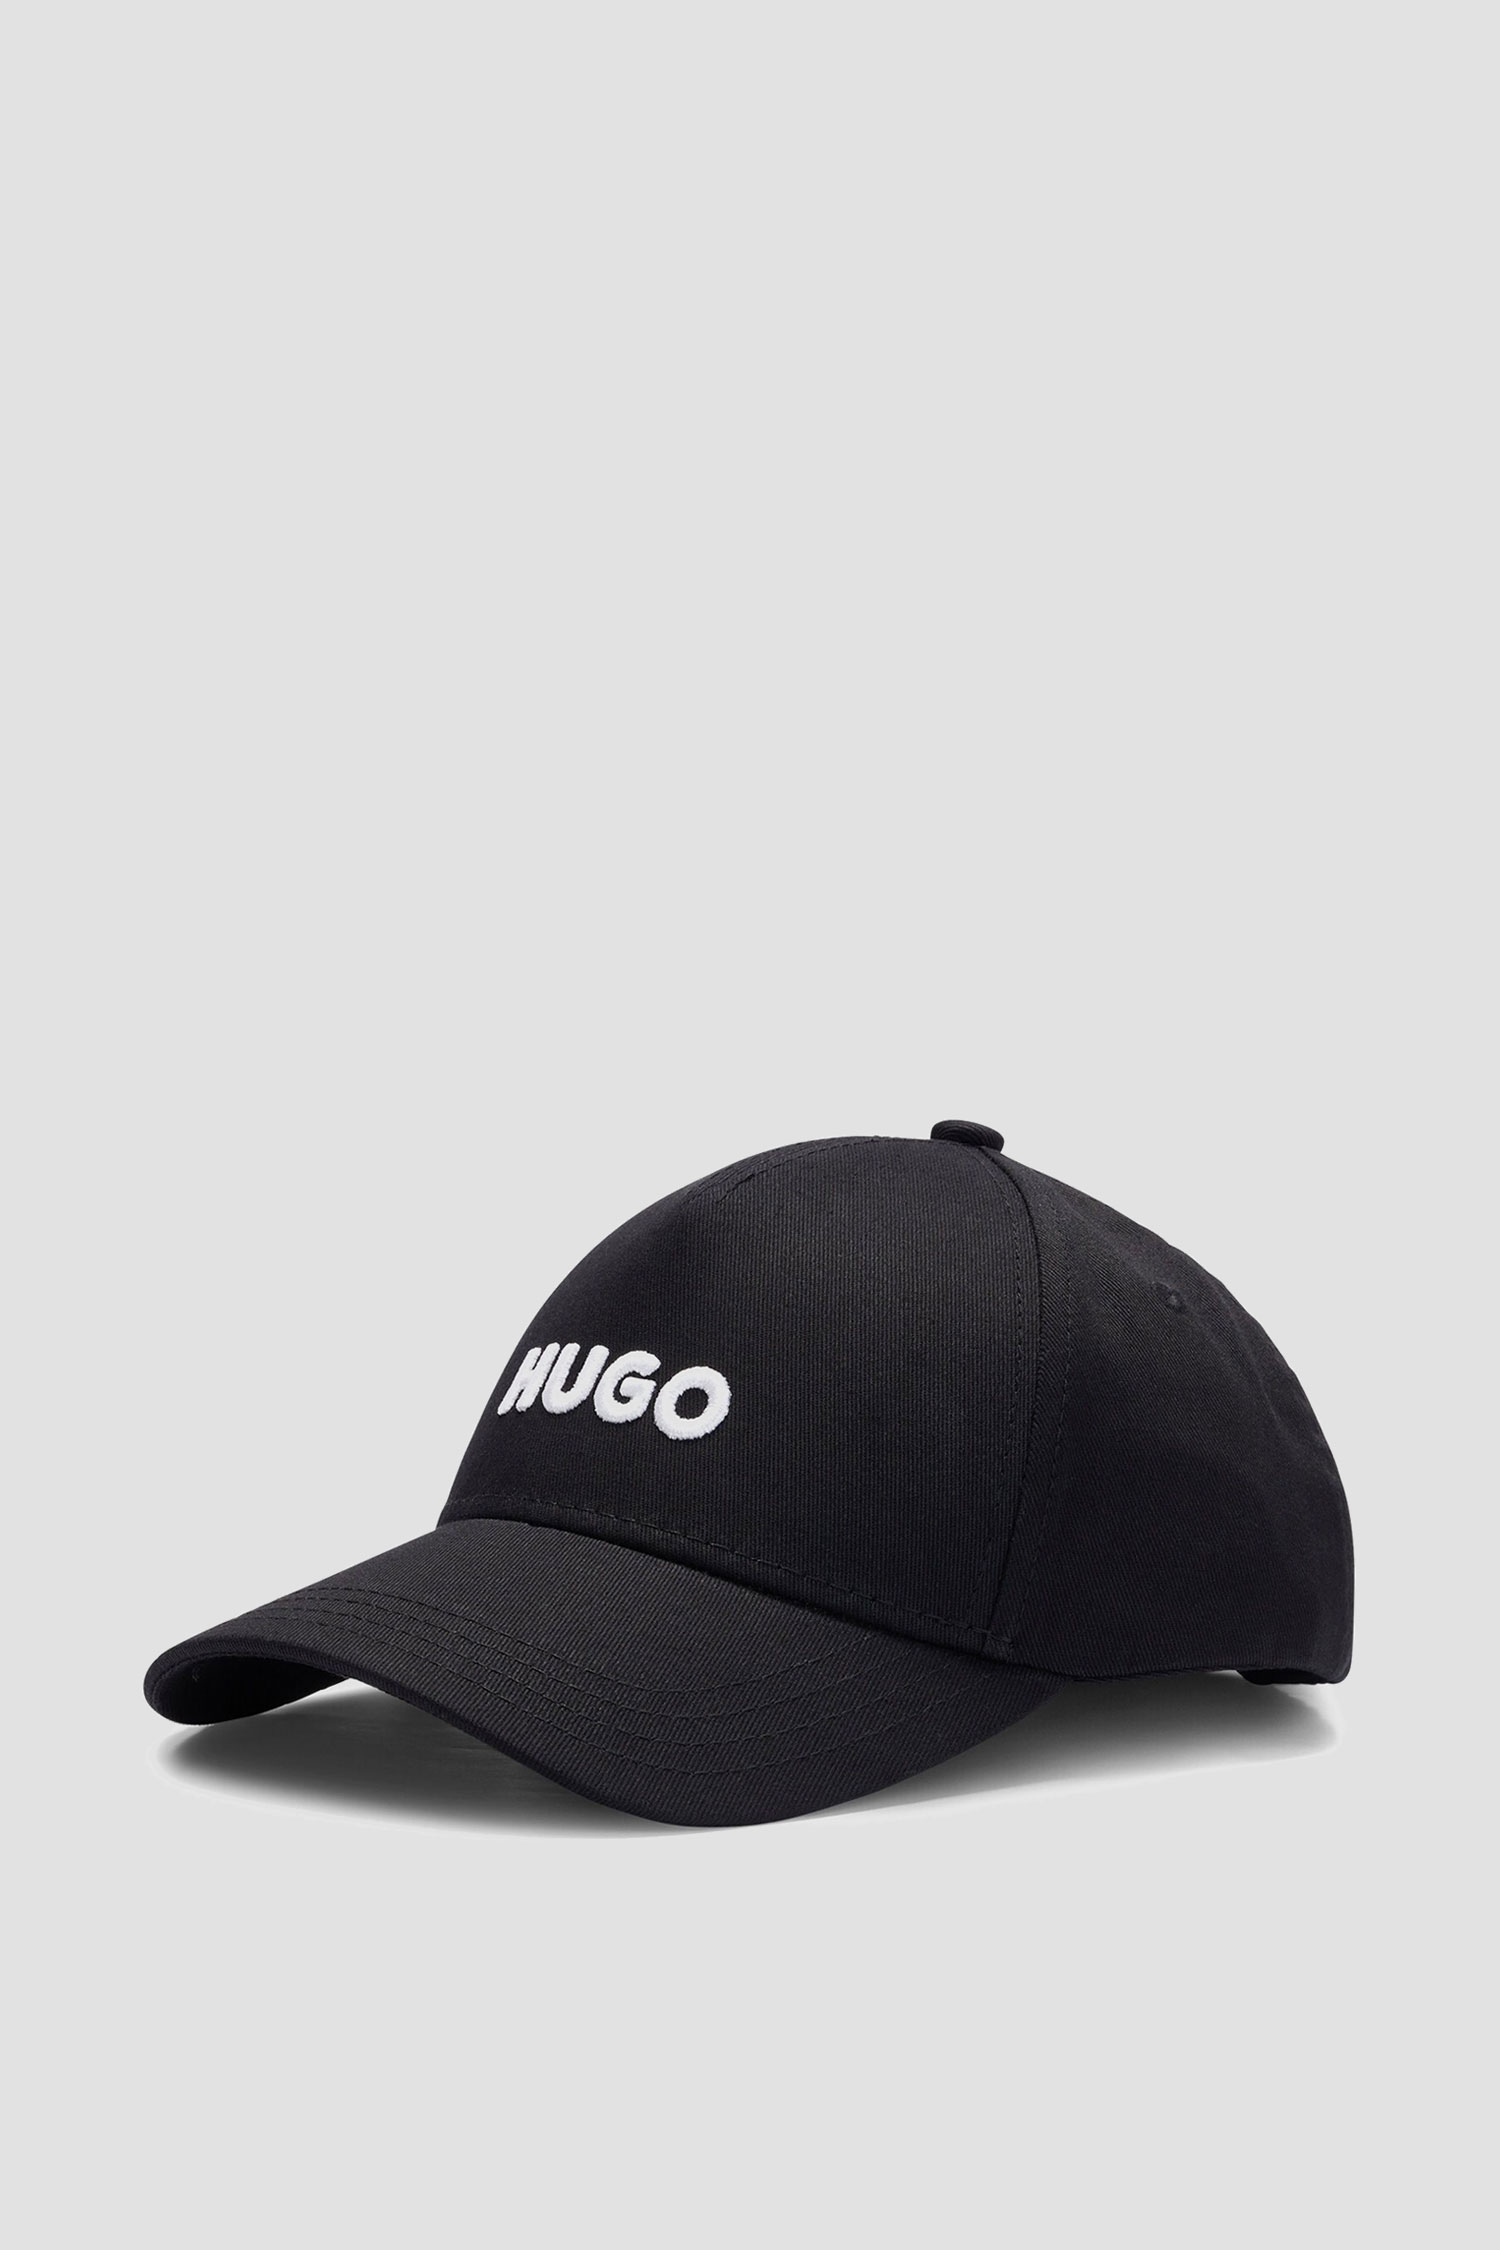 Мужская черная кепка HUGO 50496033;001